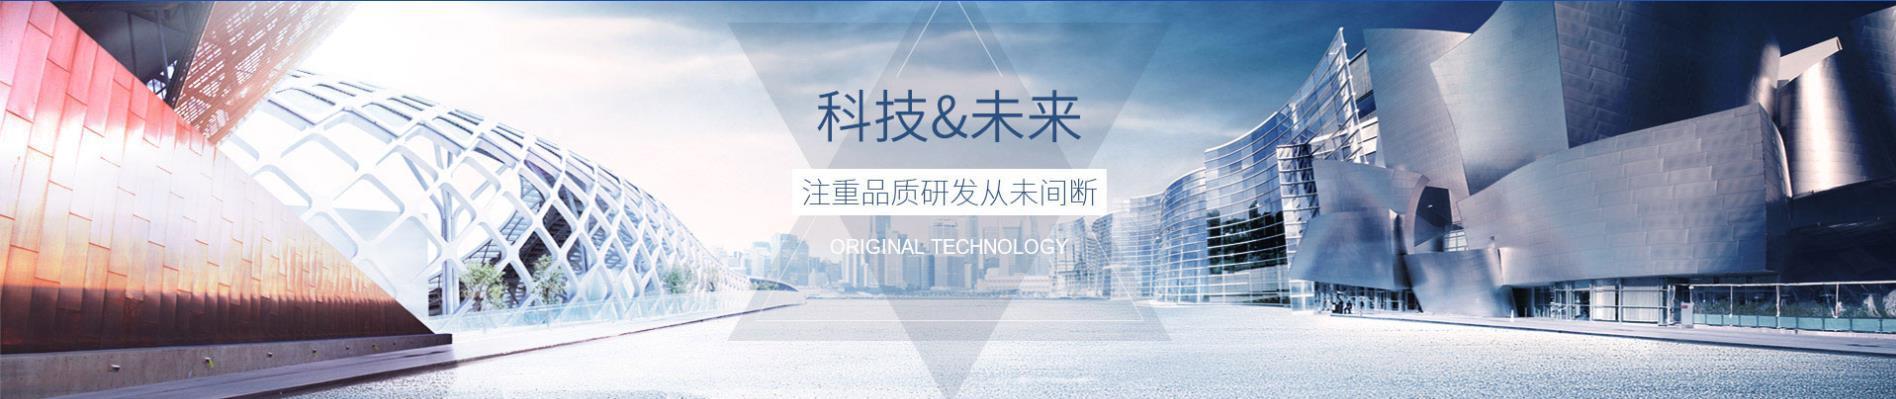 高士達注重(zhong)產品研發,科技(ji)未來